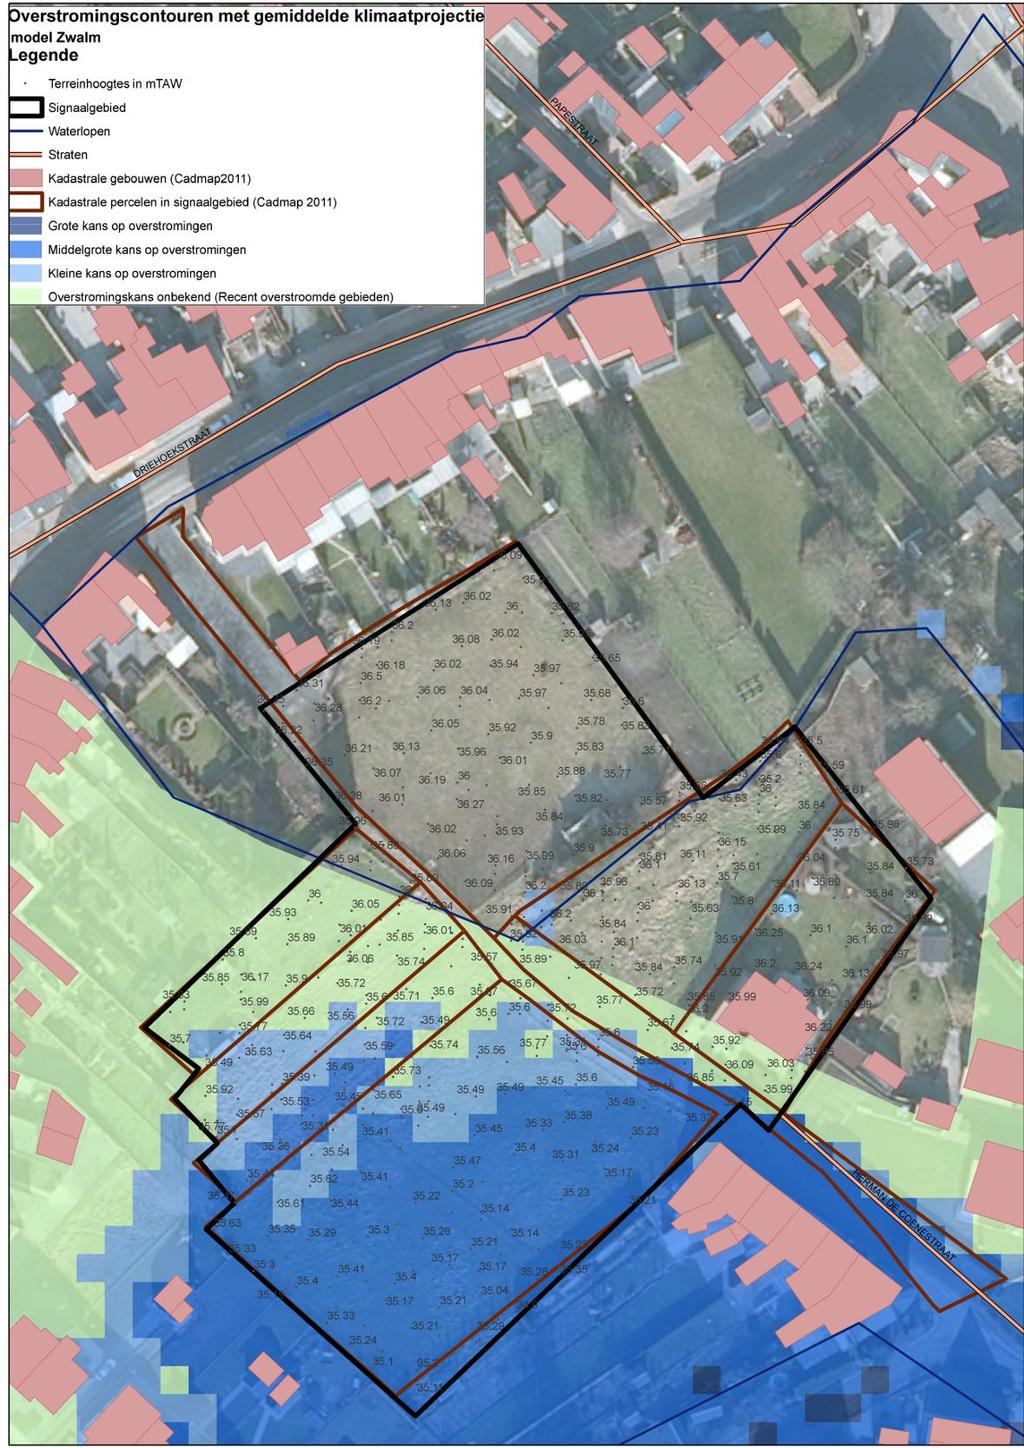 Handleidi ng kaart: De weergave van de kadastrale gebouwen (Cadmap 2011), kadastrale percelen (Cadmap 2011), straten en waterlopen geven een situering van het signaalgebied.